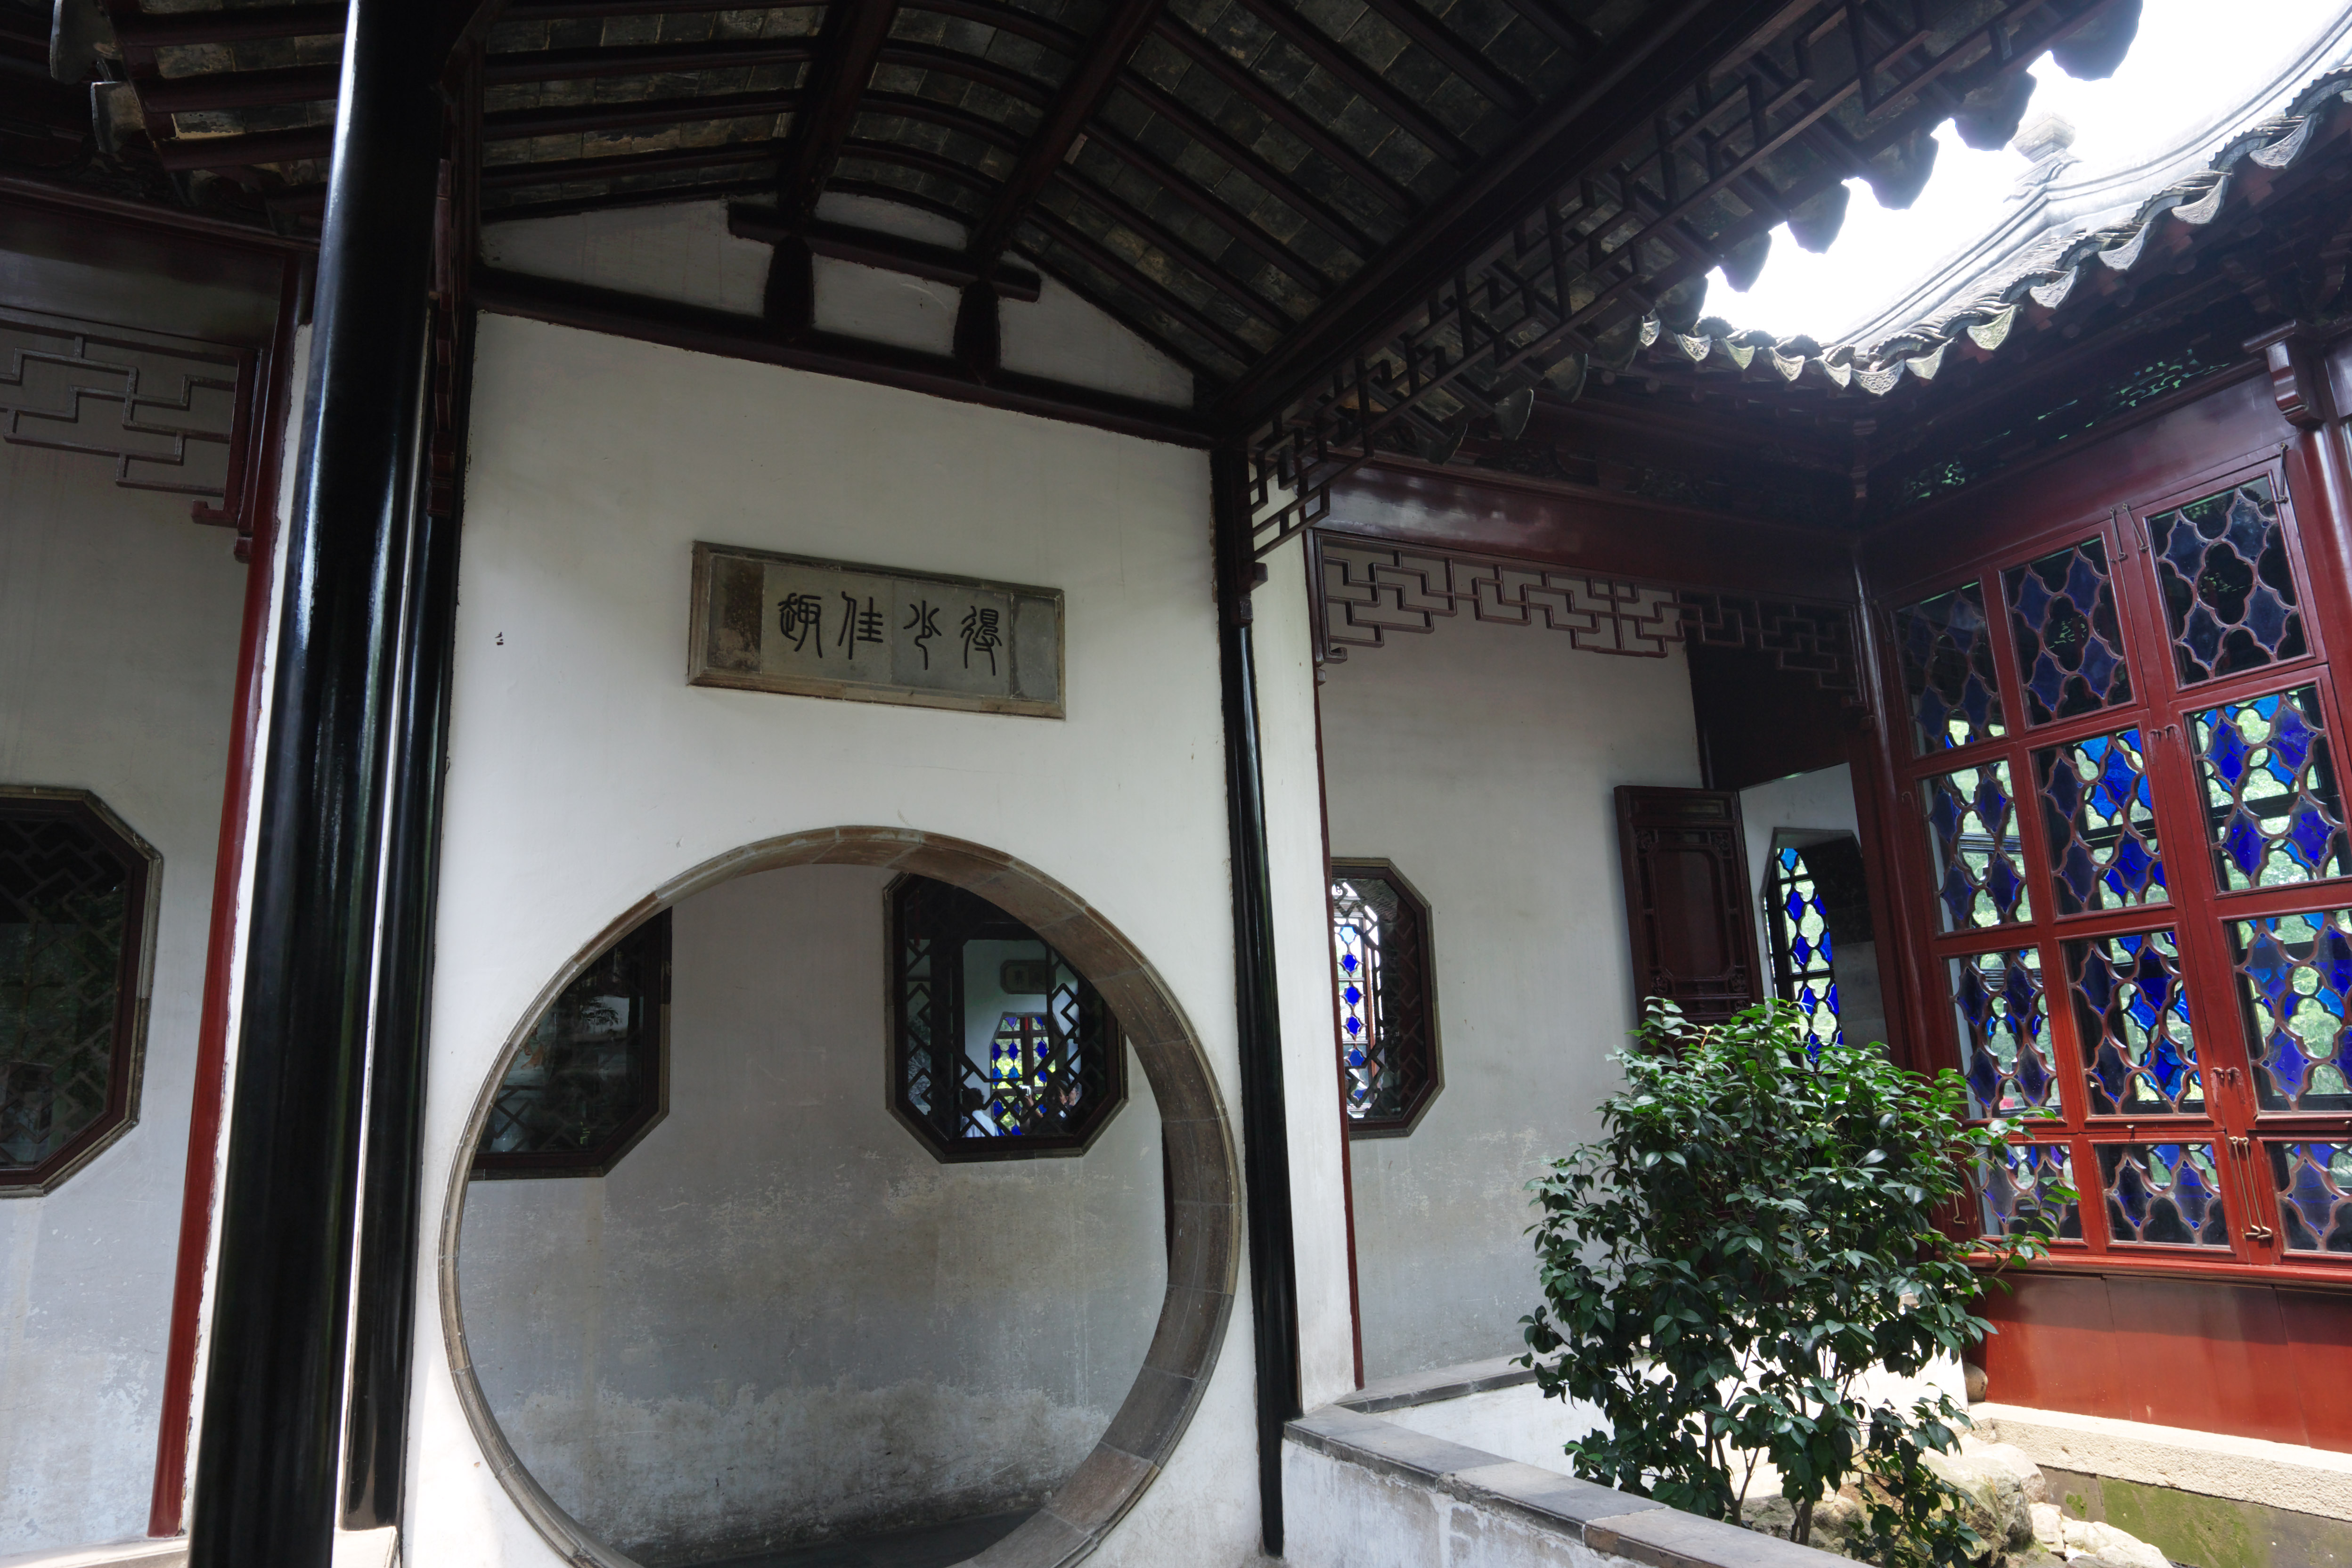 fotografia, material, livra, ajardine, imagine, proveja fotografia,Uma entrada de 36 edifcio de patos de mandarim de Zhuozhengyuan, Arquitetura, 36 edifcio de patos de mandarim, crculo, jardim